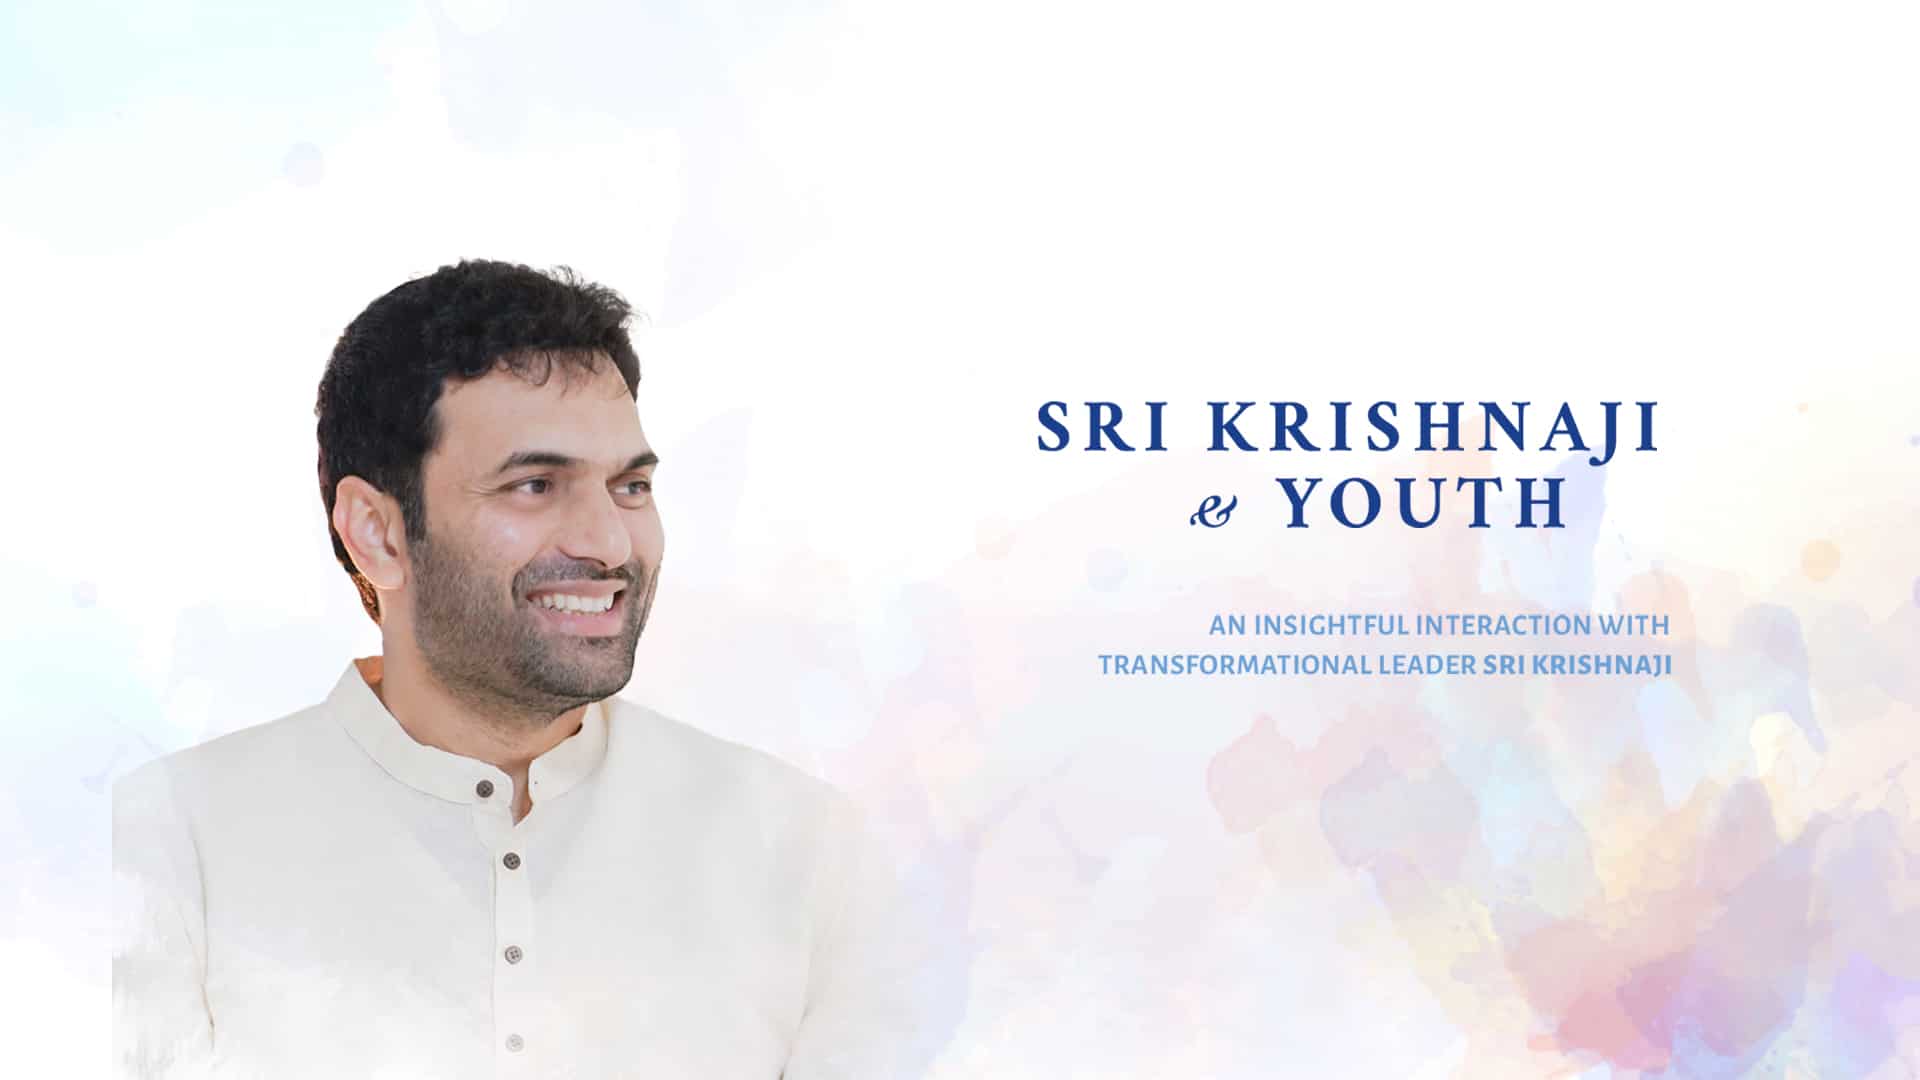 Sri Krishnaji & Youth